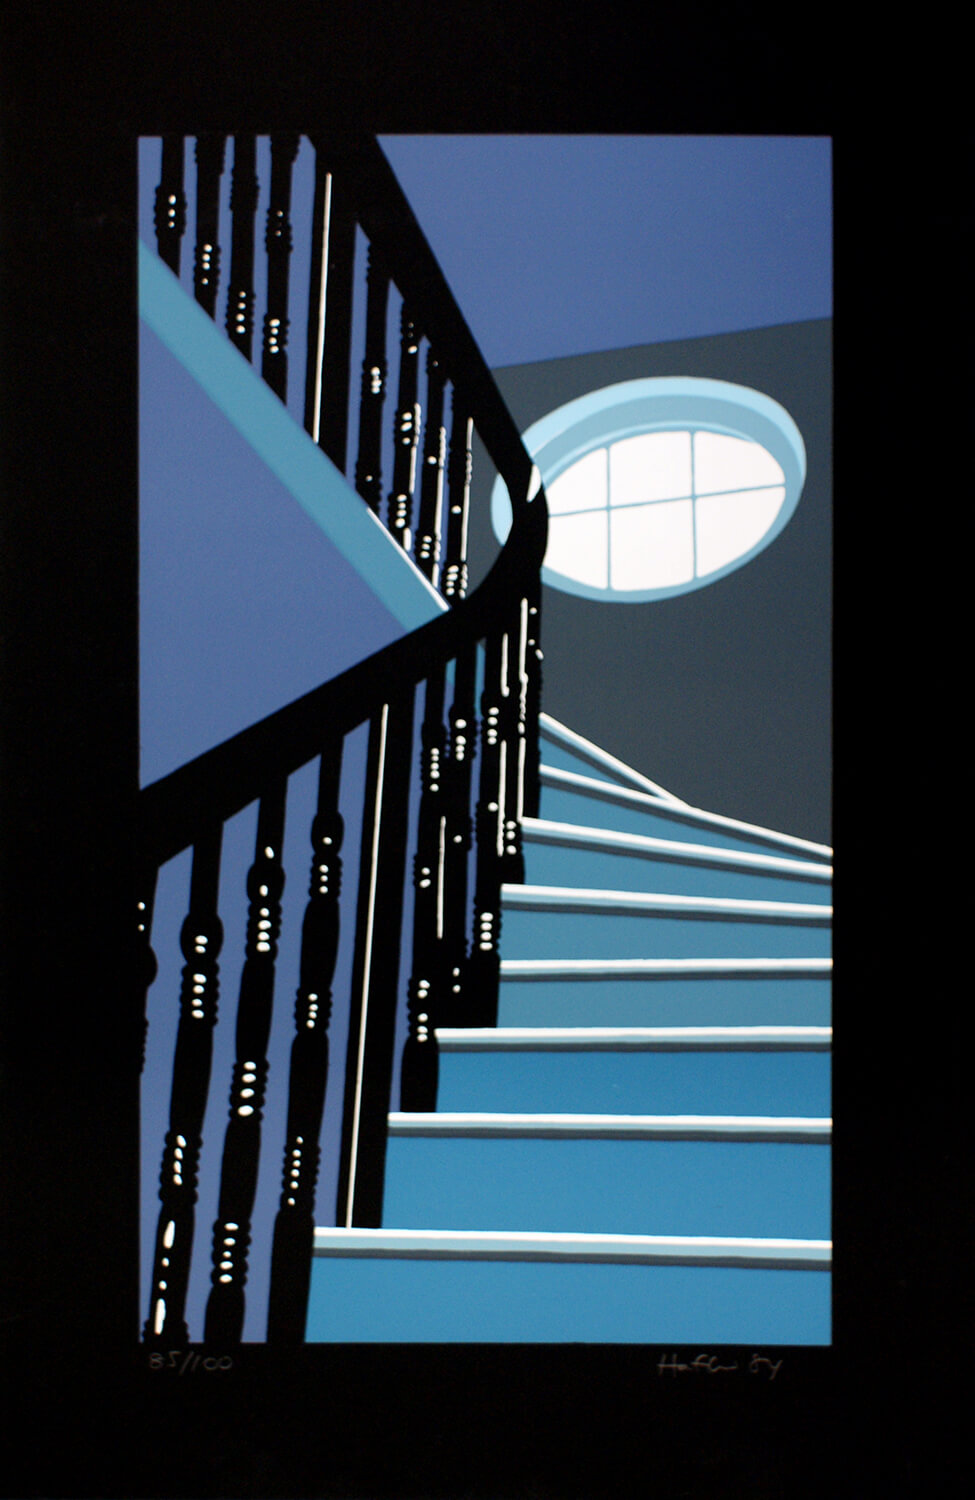 Sarah Haffner, Blaue Treppe III, 1984, Siebdruck, Auflage: 100, 84,7 x 55 cm